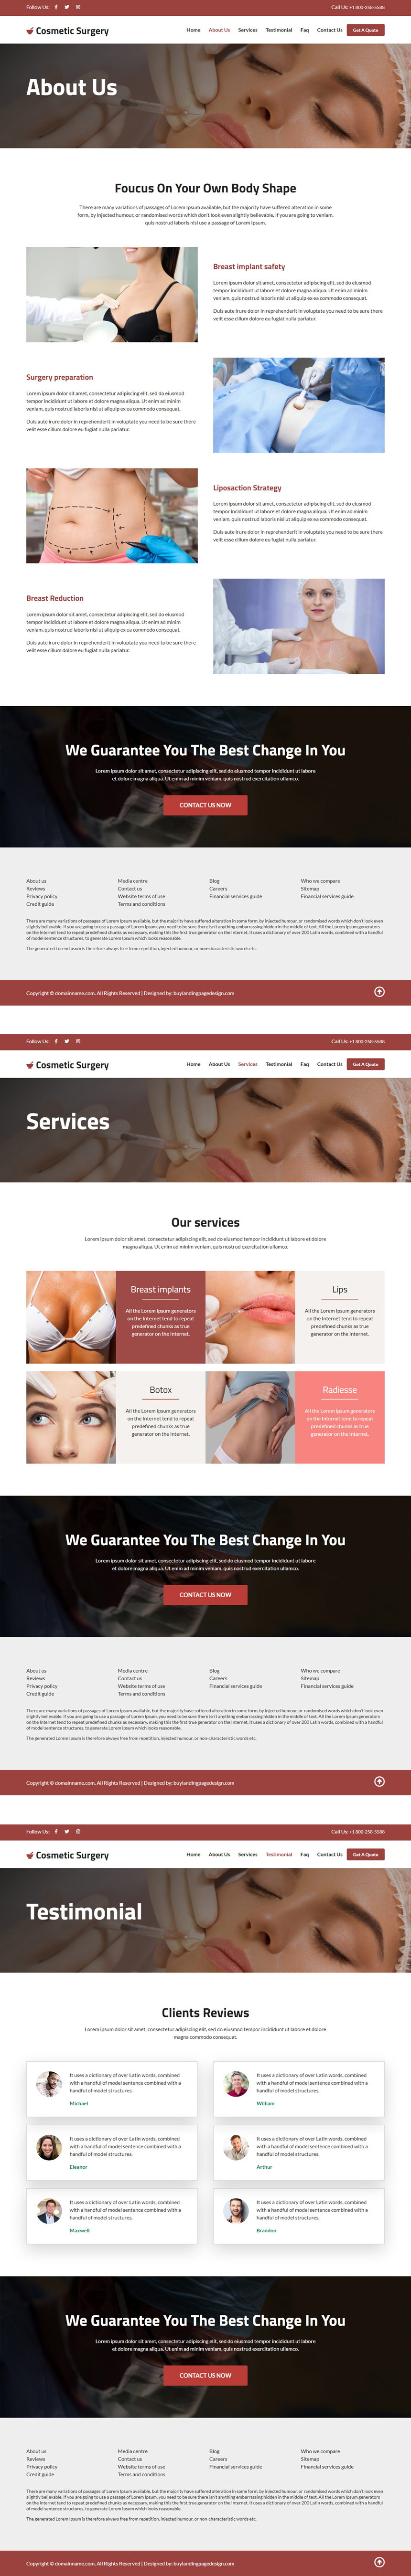 cosmetic plastic surgery procedures responsive website design